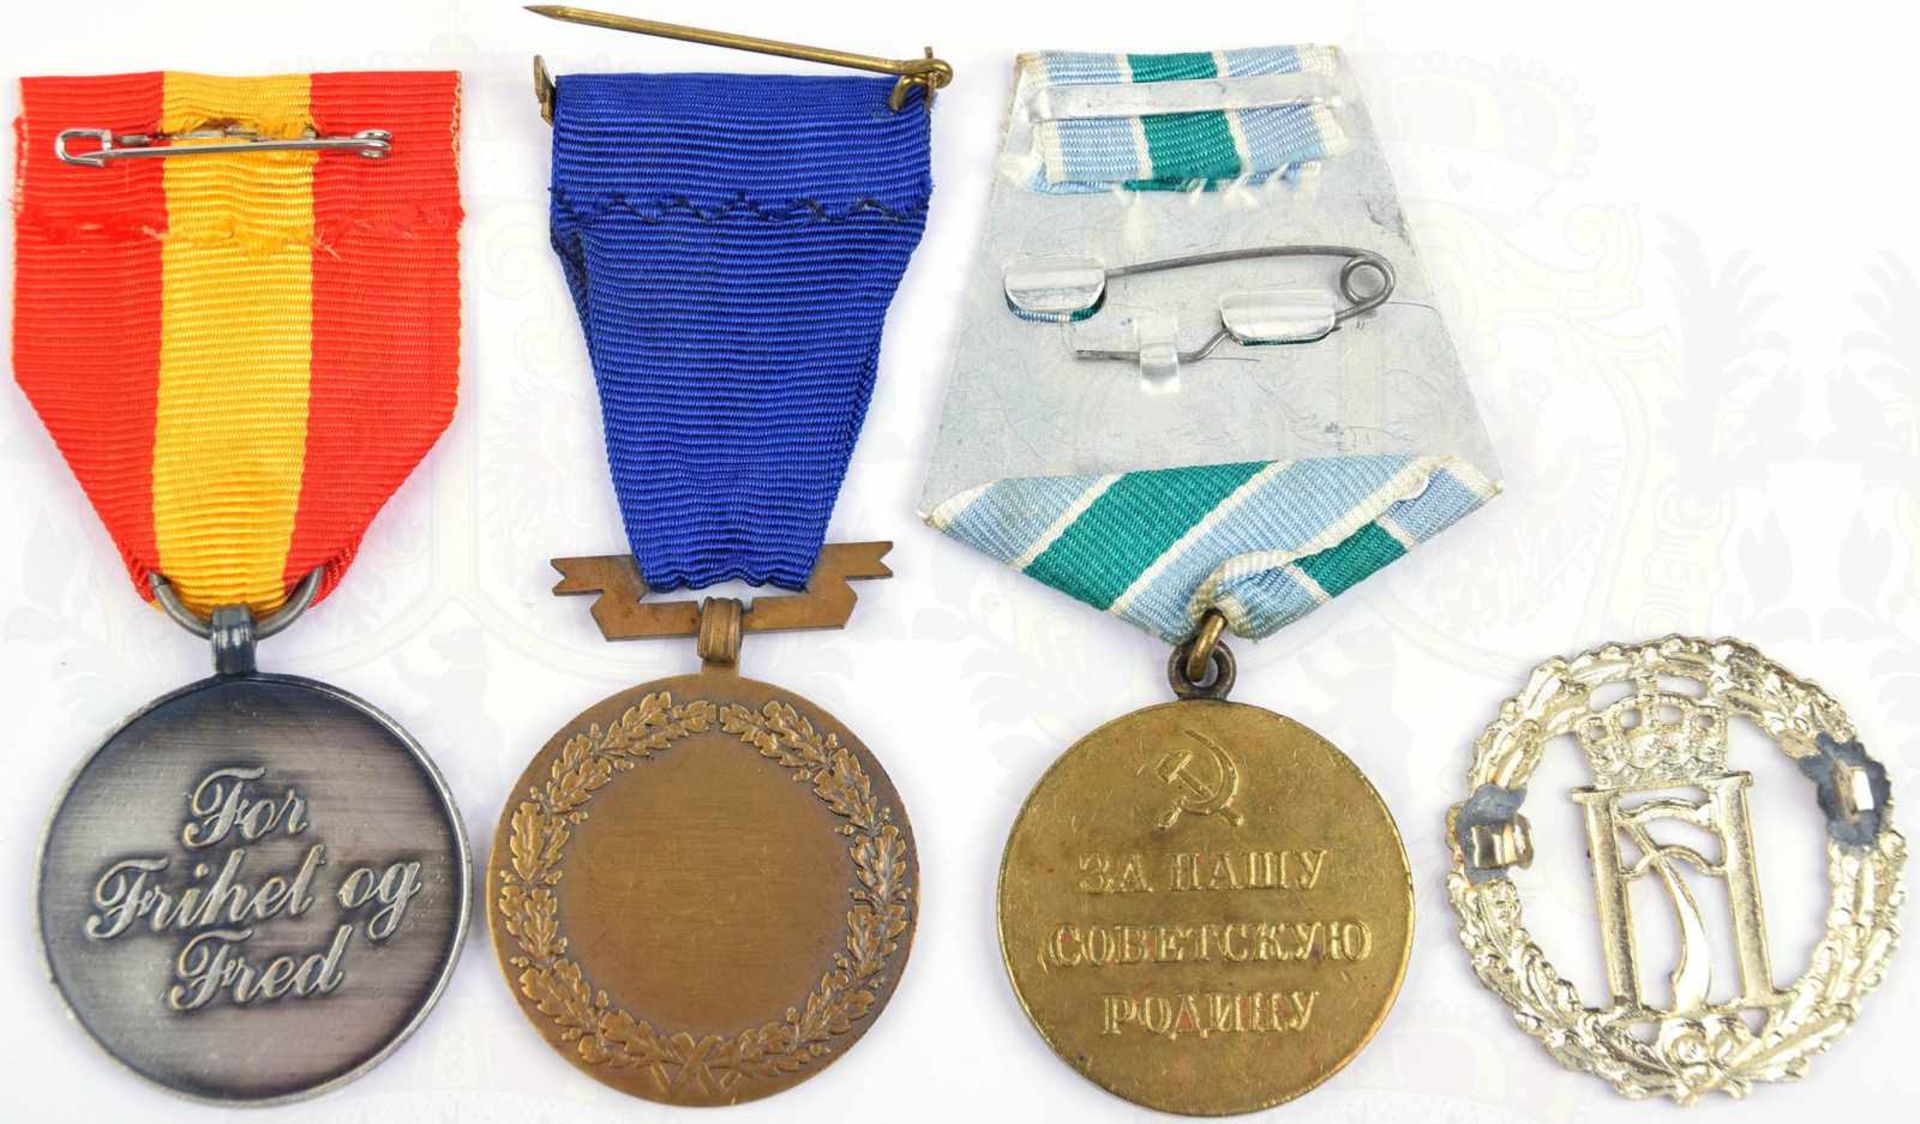 2 ERINNERUNGSMEDAILLEN, Alt for Norge 1940-1915 u. Narvik 1940-1990; dazu Mützenabzeichen, sowjet. - Bild 3 aus 3